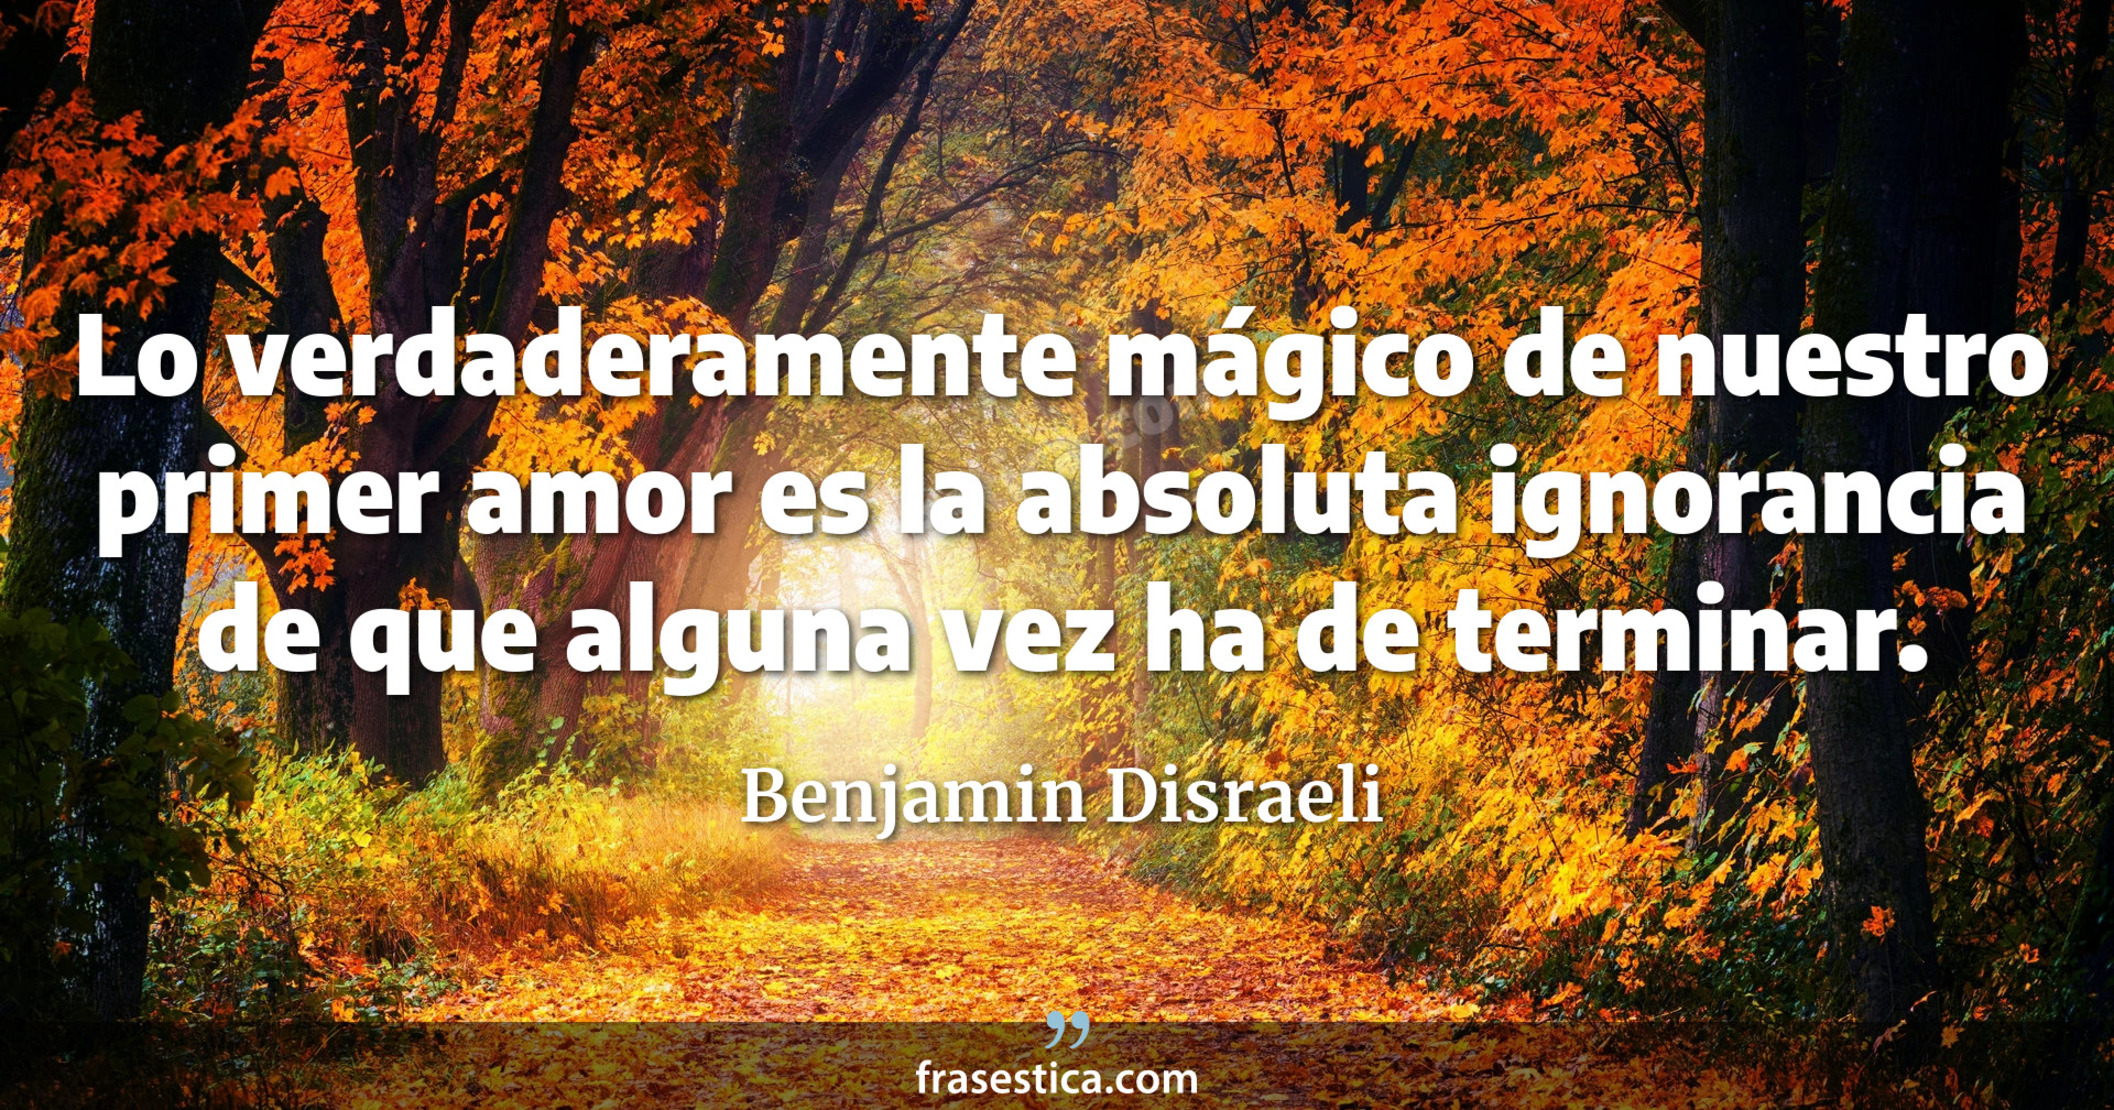 Lo verdaderamente mágico de nuestro primer amor es la absoluta ignorancia de que alguna vez ha de terminar. - Benjamin Disraeli